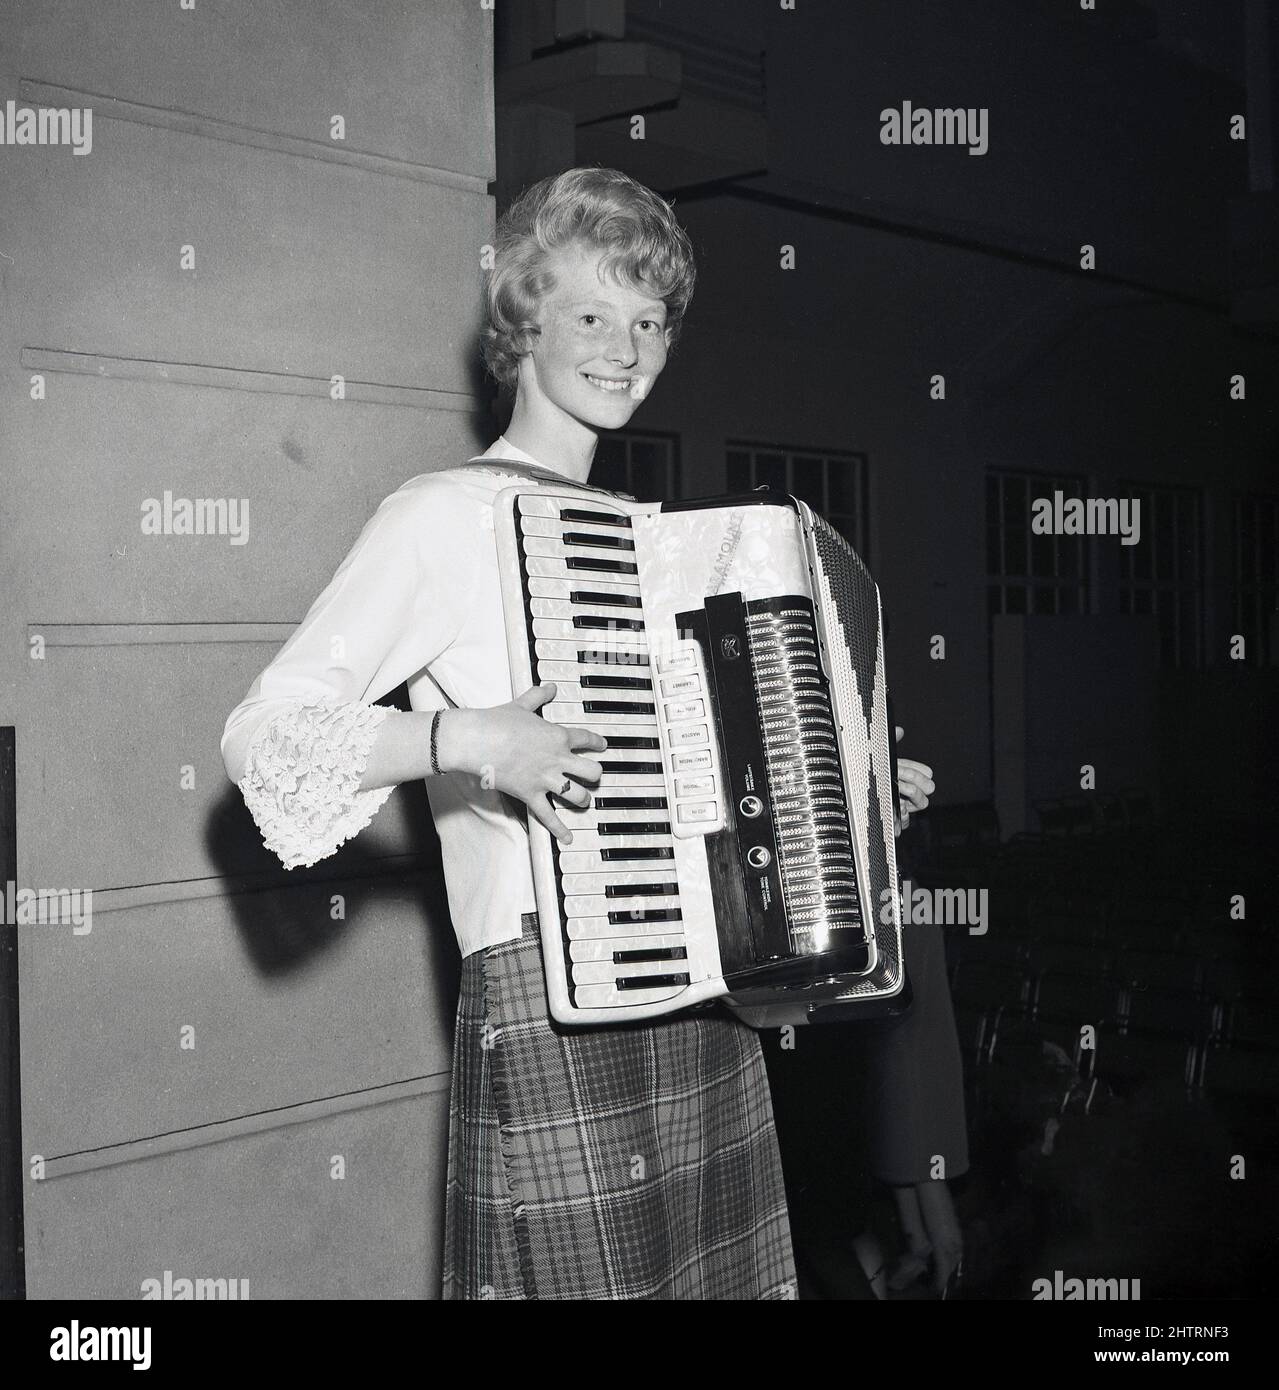 1960s, historique, une jeune écossaise en jupe tartan debout jouant un accordéon, un instrument de musique à main en forme de boîte où les touches et/ou les boutons sont pressés tout en déplaçant les deux côtés ensemble, Fife, Écosse, Royaume-Uni. Son instrument est un accordéon Paramount, il s'agissait d'une société italienne, Accordons di Eraldo & Elio Busilacchio, de Castelfidardo, qui était active de 1946 à 1982. Banque D'Images